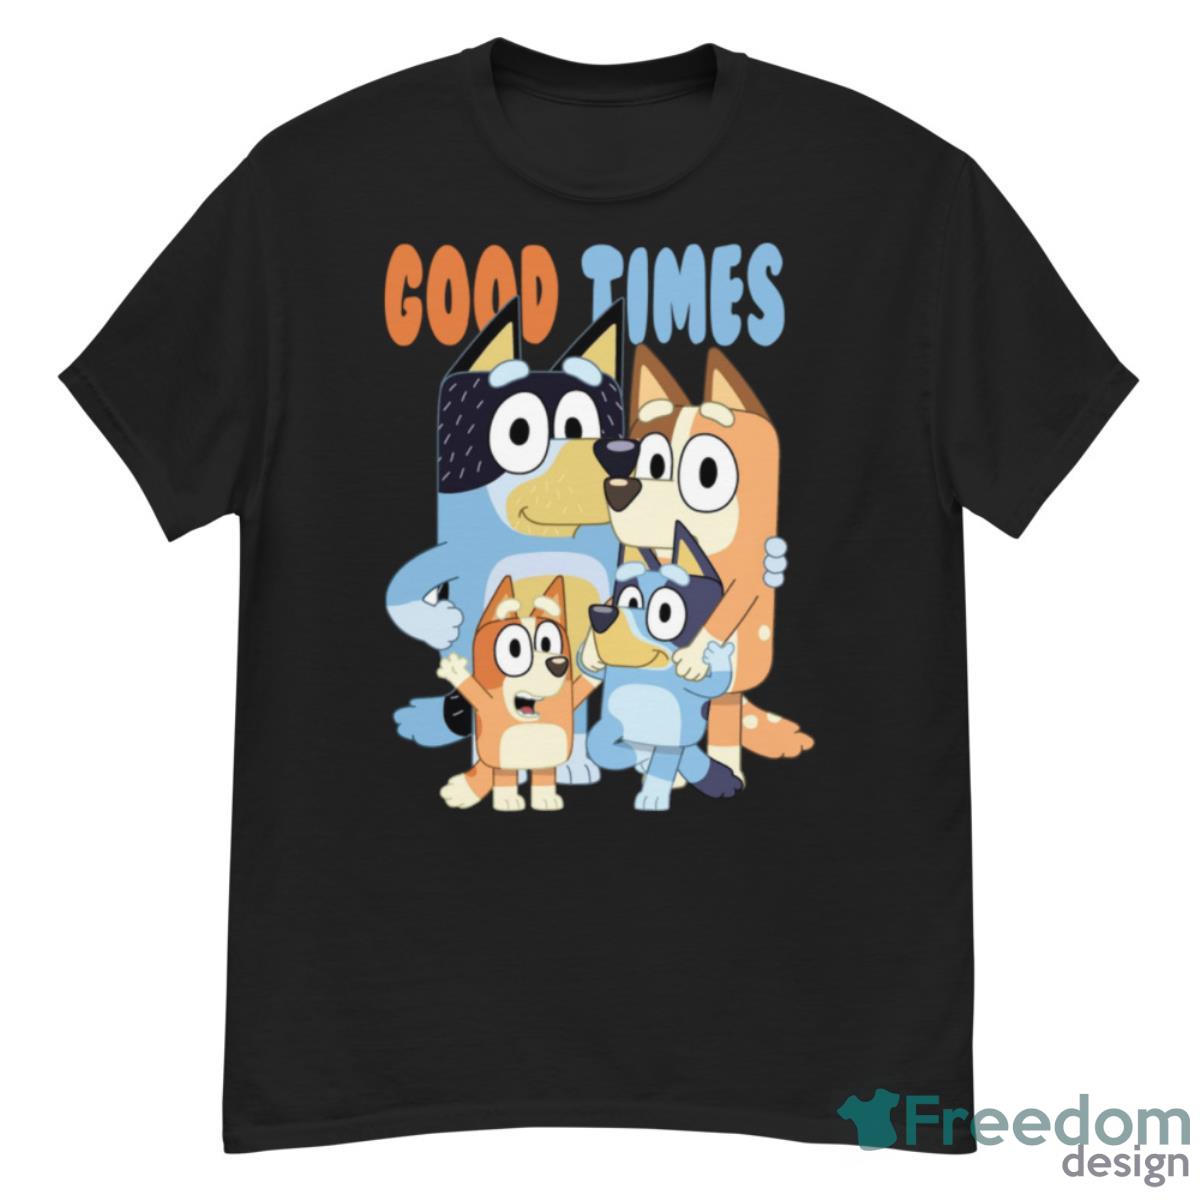 Bluey Dad Good Times Funny T-Shirt - G500 Men’s Classic T-Shirt